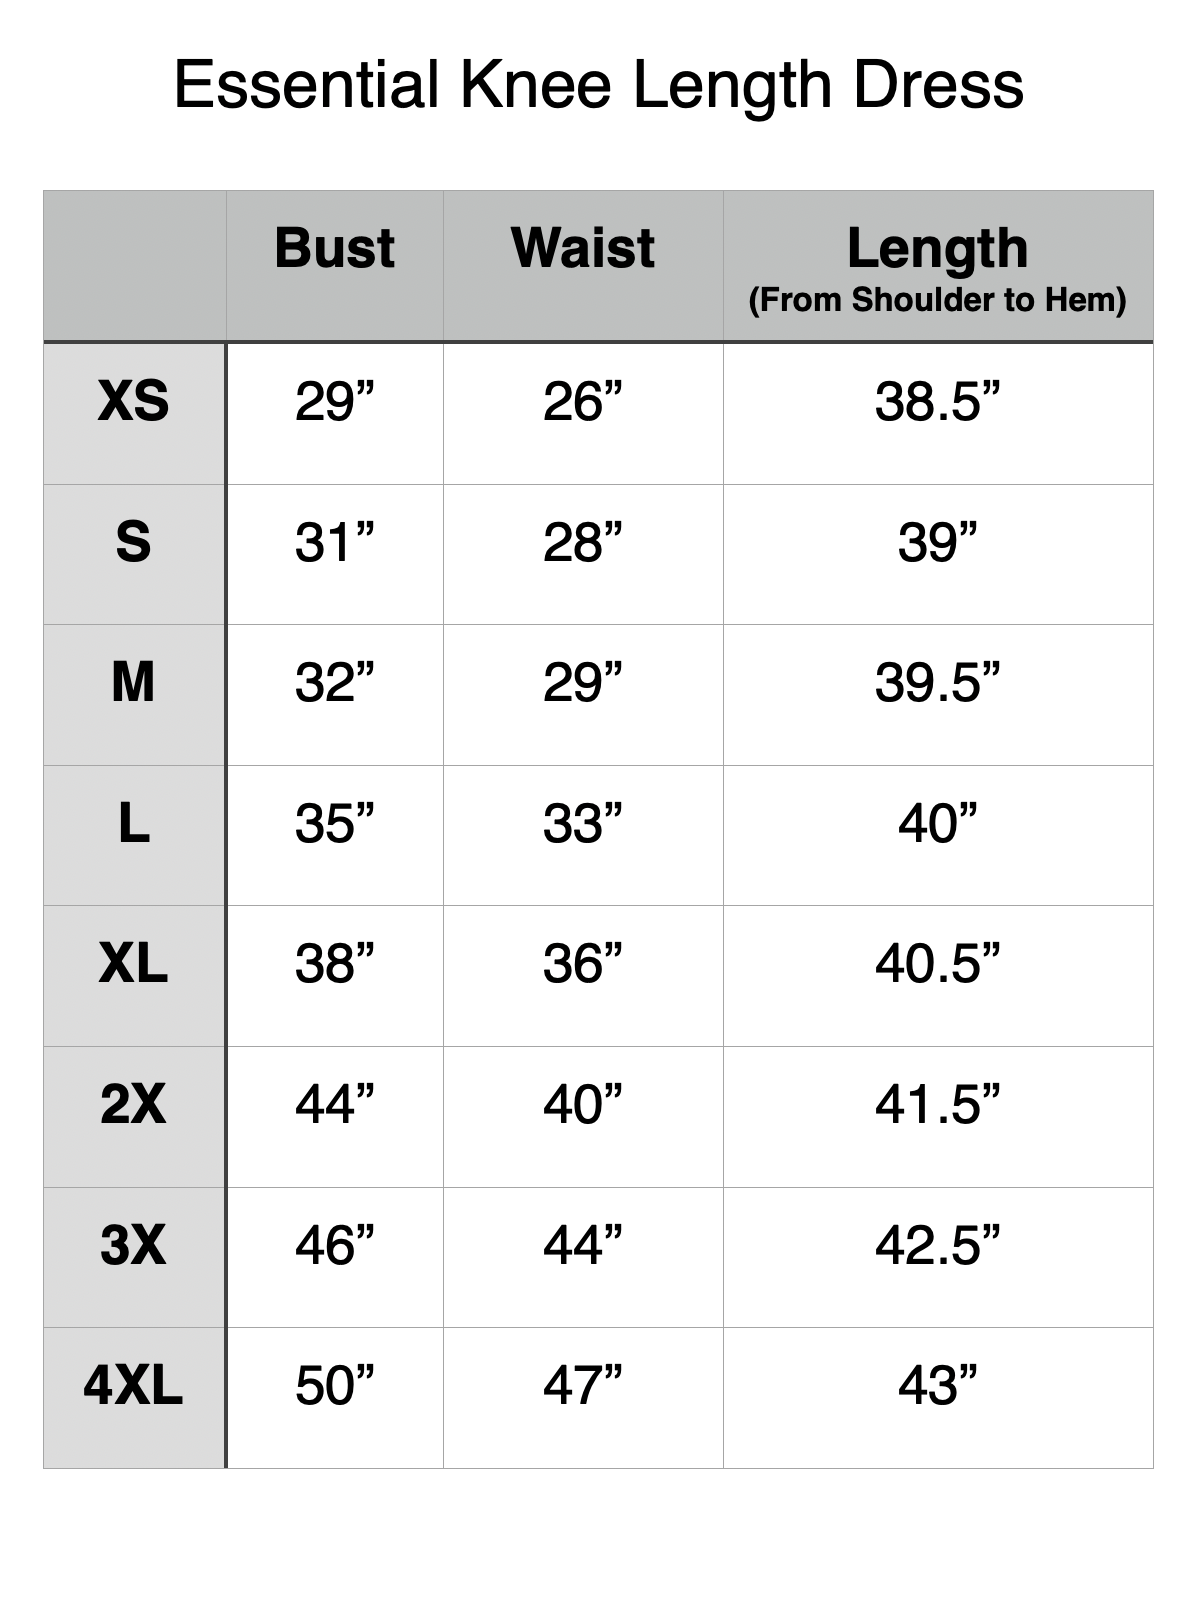 Essential Knee Length Dress - XS: 29" Bust, 26" Waist, 38.5" Length. S: 31" Bust, 28" Waist, 39" Length. M: 32" Bust, 29" Waist, 39.5" Length. L: 35" Bust, 33" Waist, 40" Length. XL: 38" Bust, 36" Waist, 40.5" Length. 2XL: 44" Bust, 40" Waist, 41.5" Length. 3XL: 46" Bust, 44" Waist, 42.5" Length. 4XL: 50" Bust, 47" Waist, 43" Length.